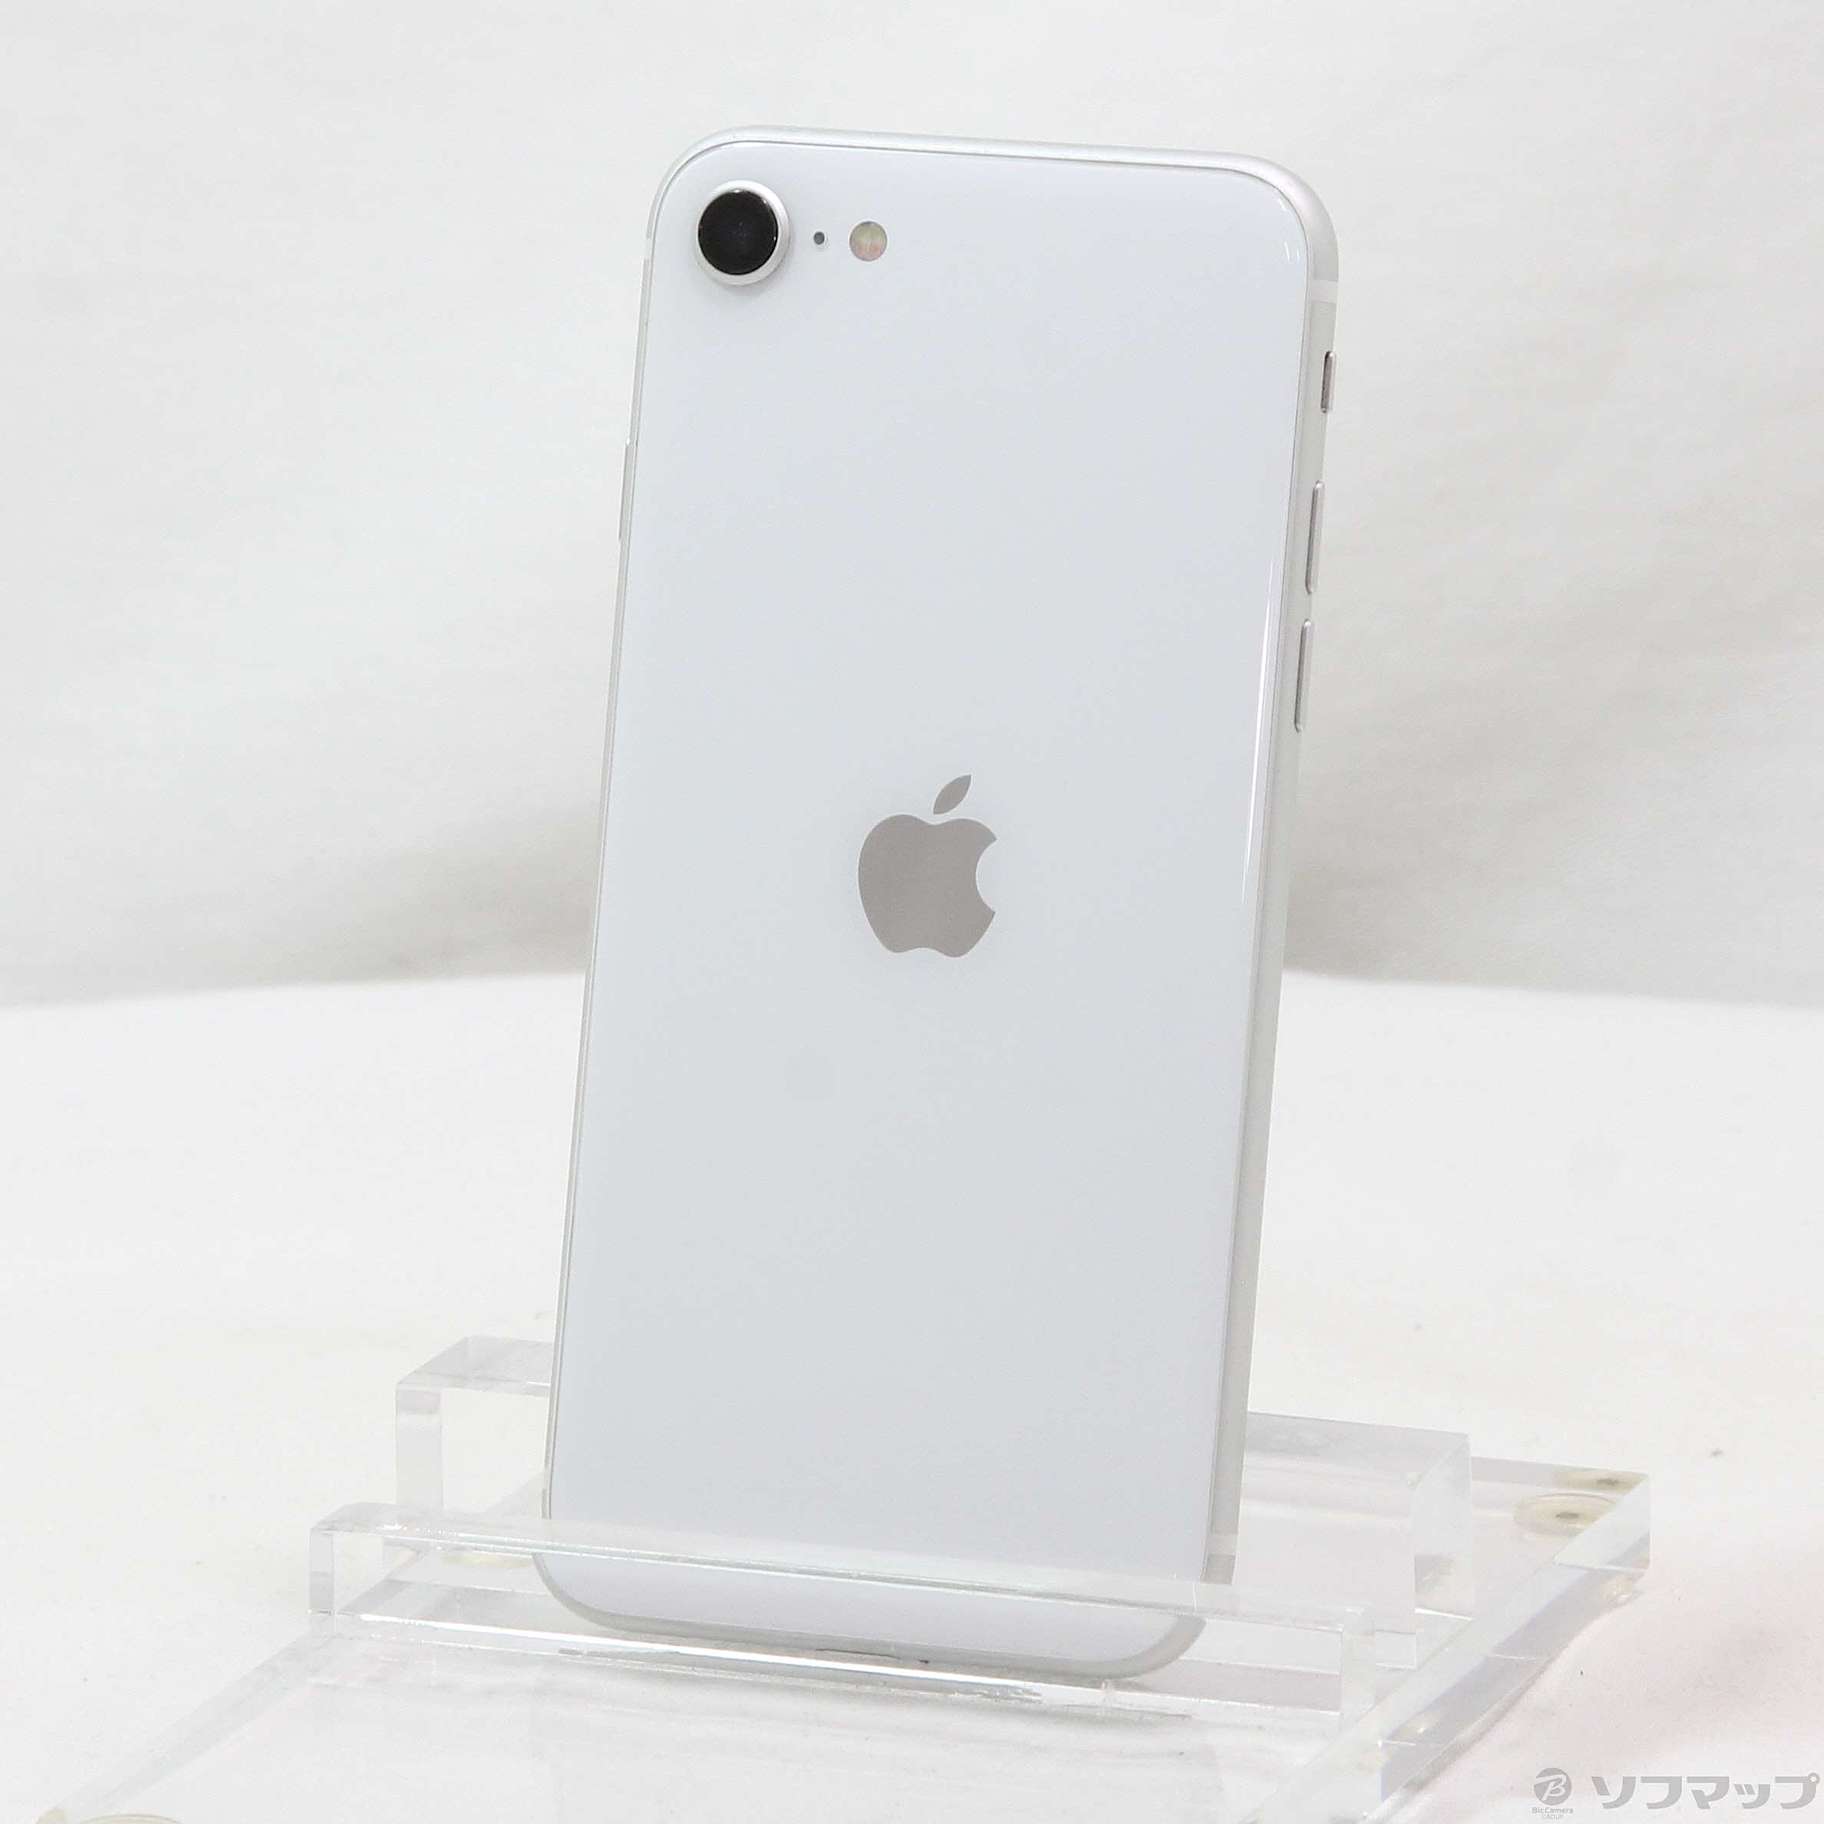 iPhone SE 第2世代 (SE2) ホワイト 256GBバッテリー最大容量79%以下